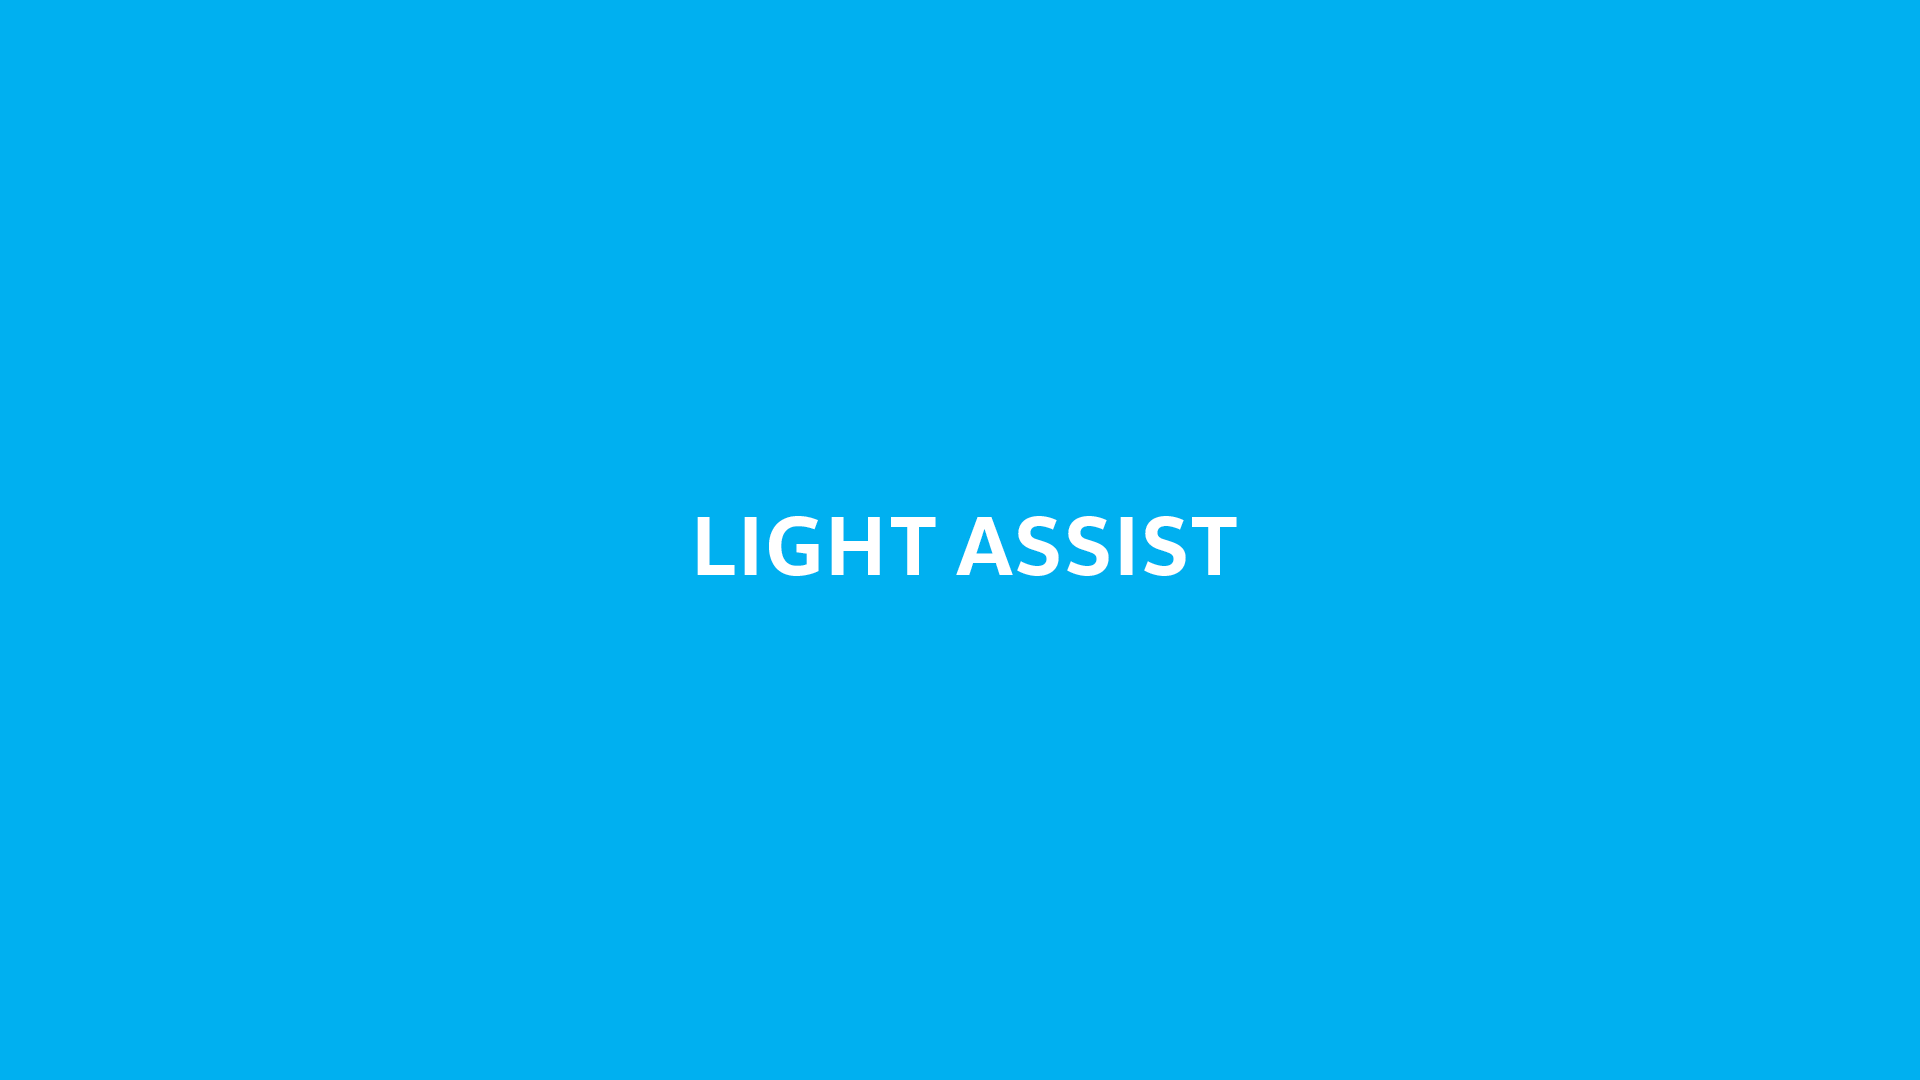 Vorschaubild zum Volkswagen Video-Light Assist